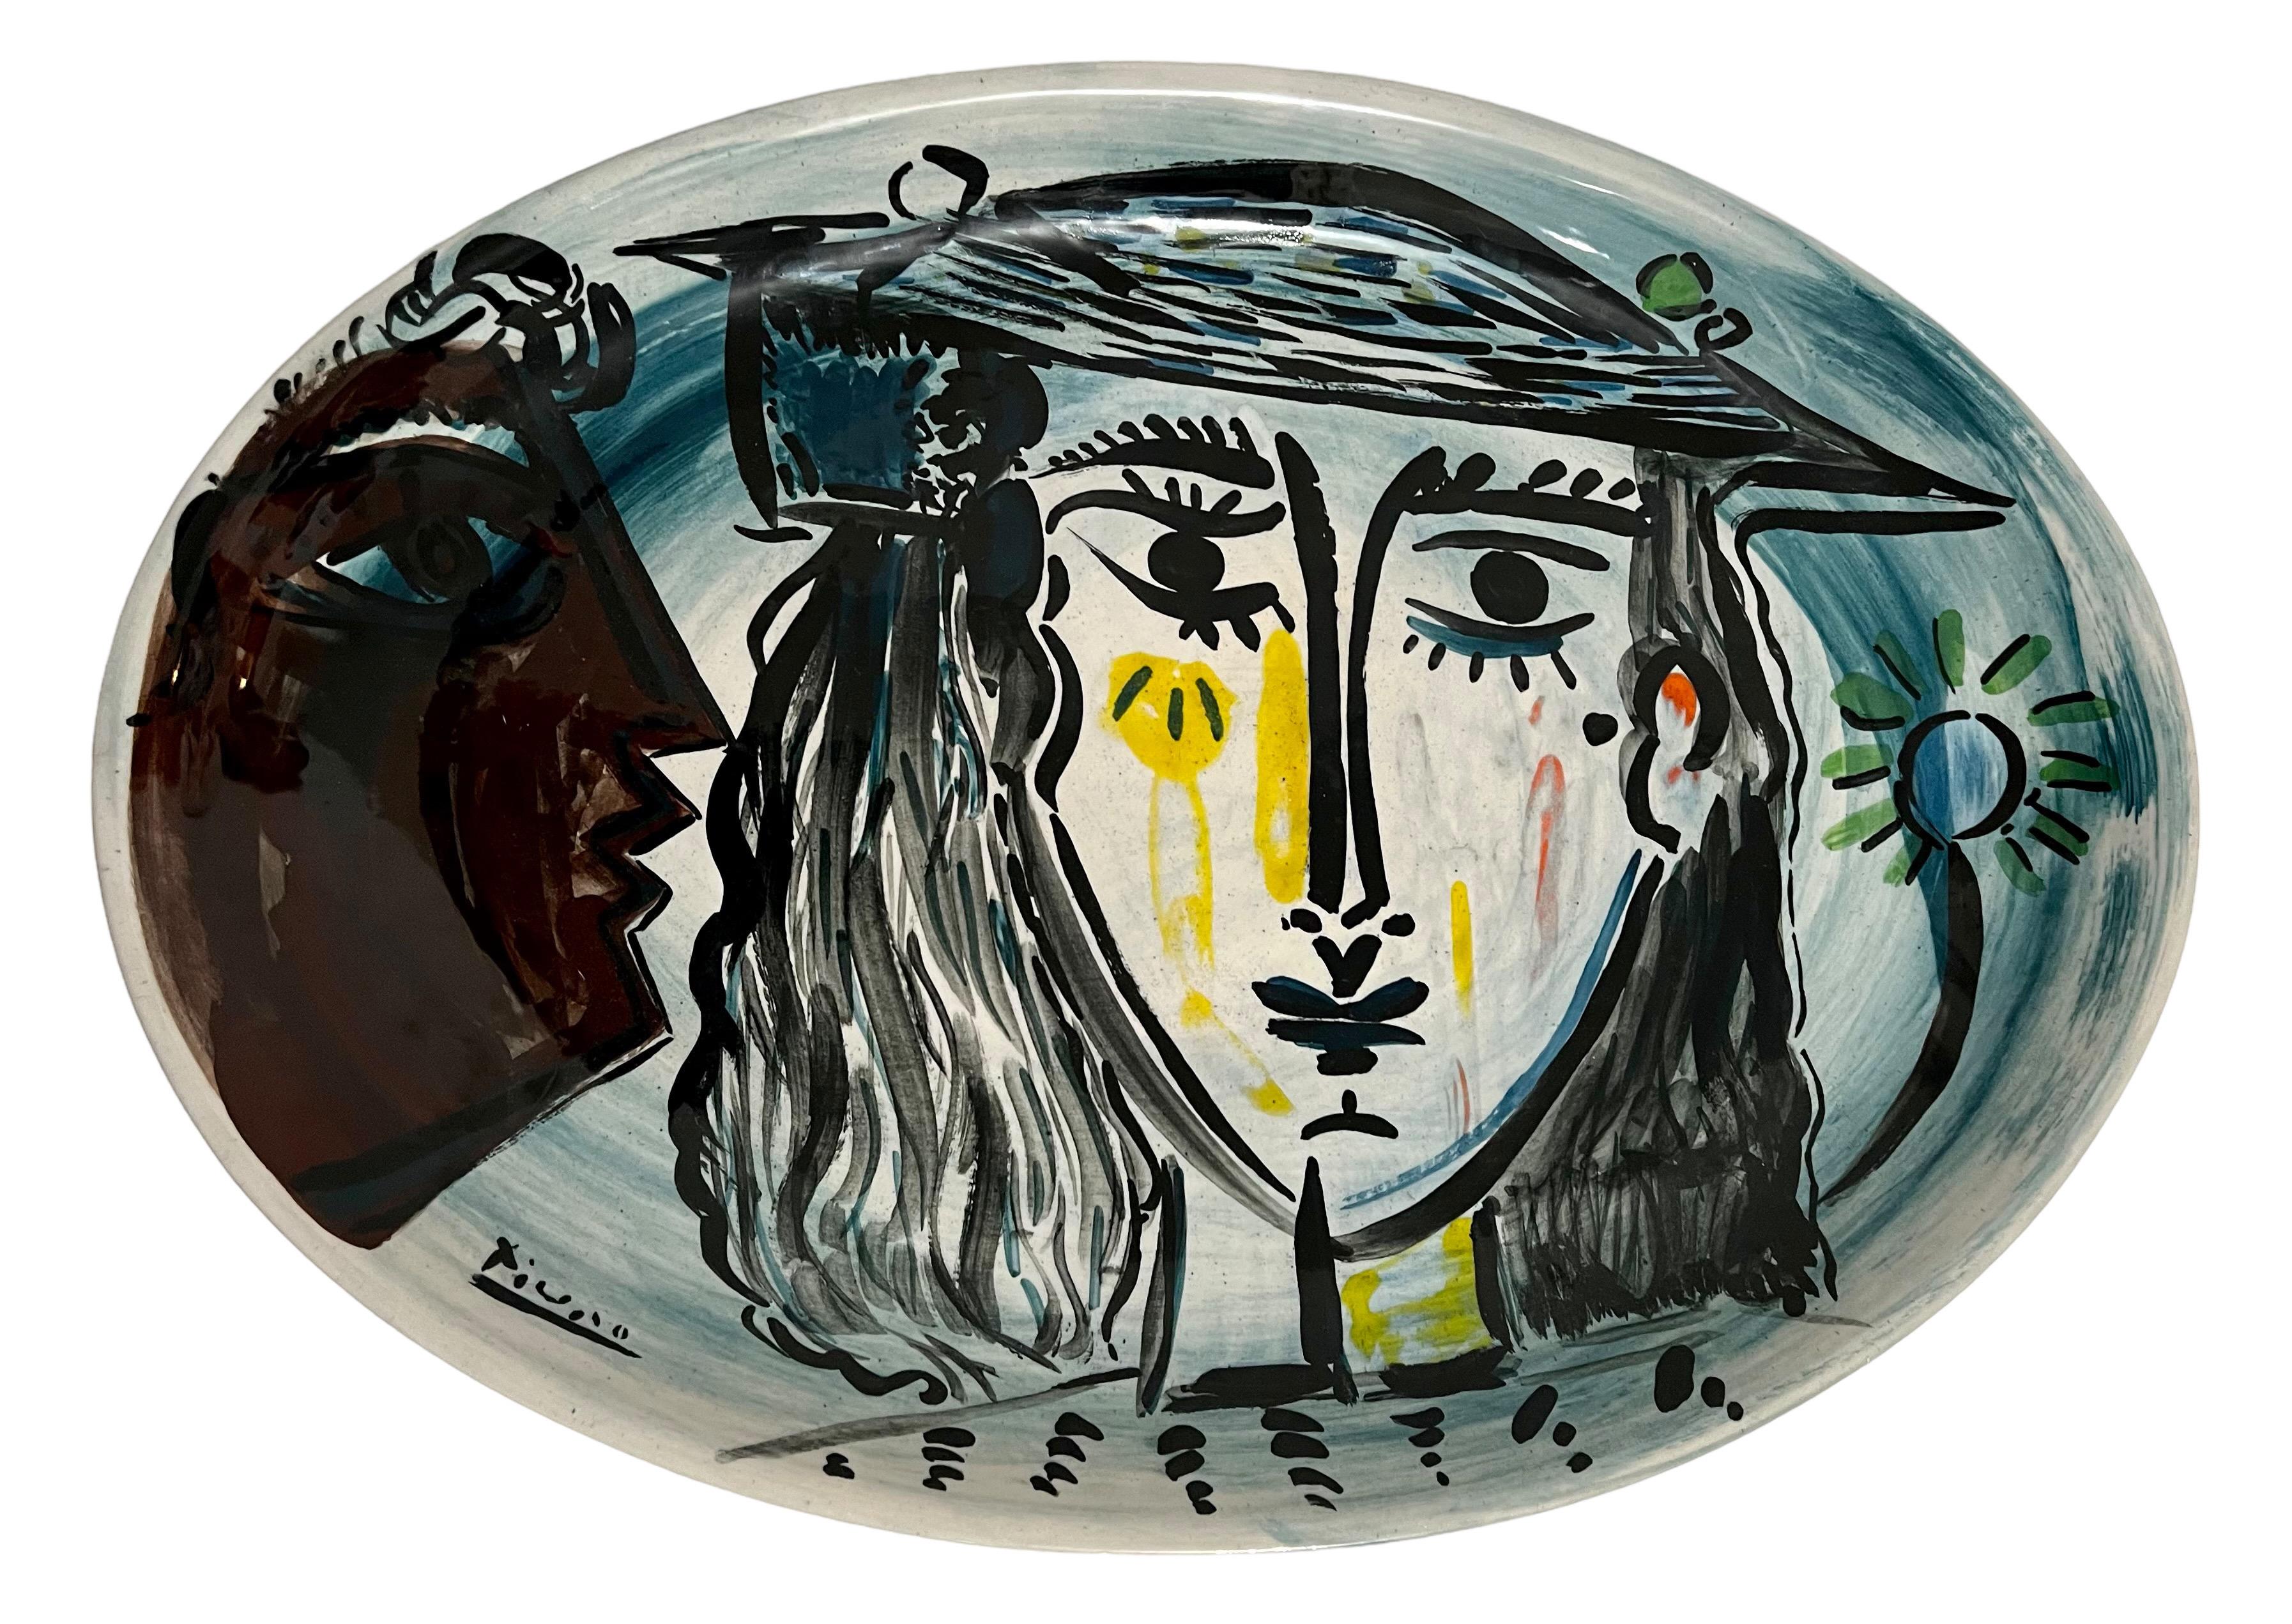 Apres Pablo Picasso (trägt auf der Vorderseite eine Pseudosignatur)
Handsigniert David Stein, verso datiert 1979.
Ovale, figural bemalte Servierplatte aus Porzellan oder Keramik.
Abmessungen: 18